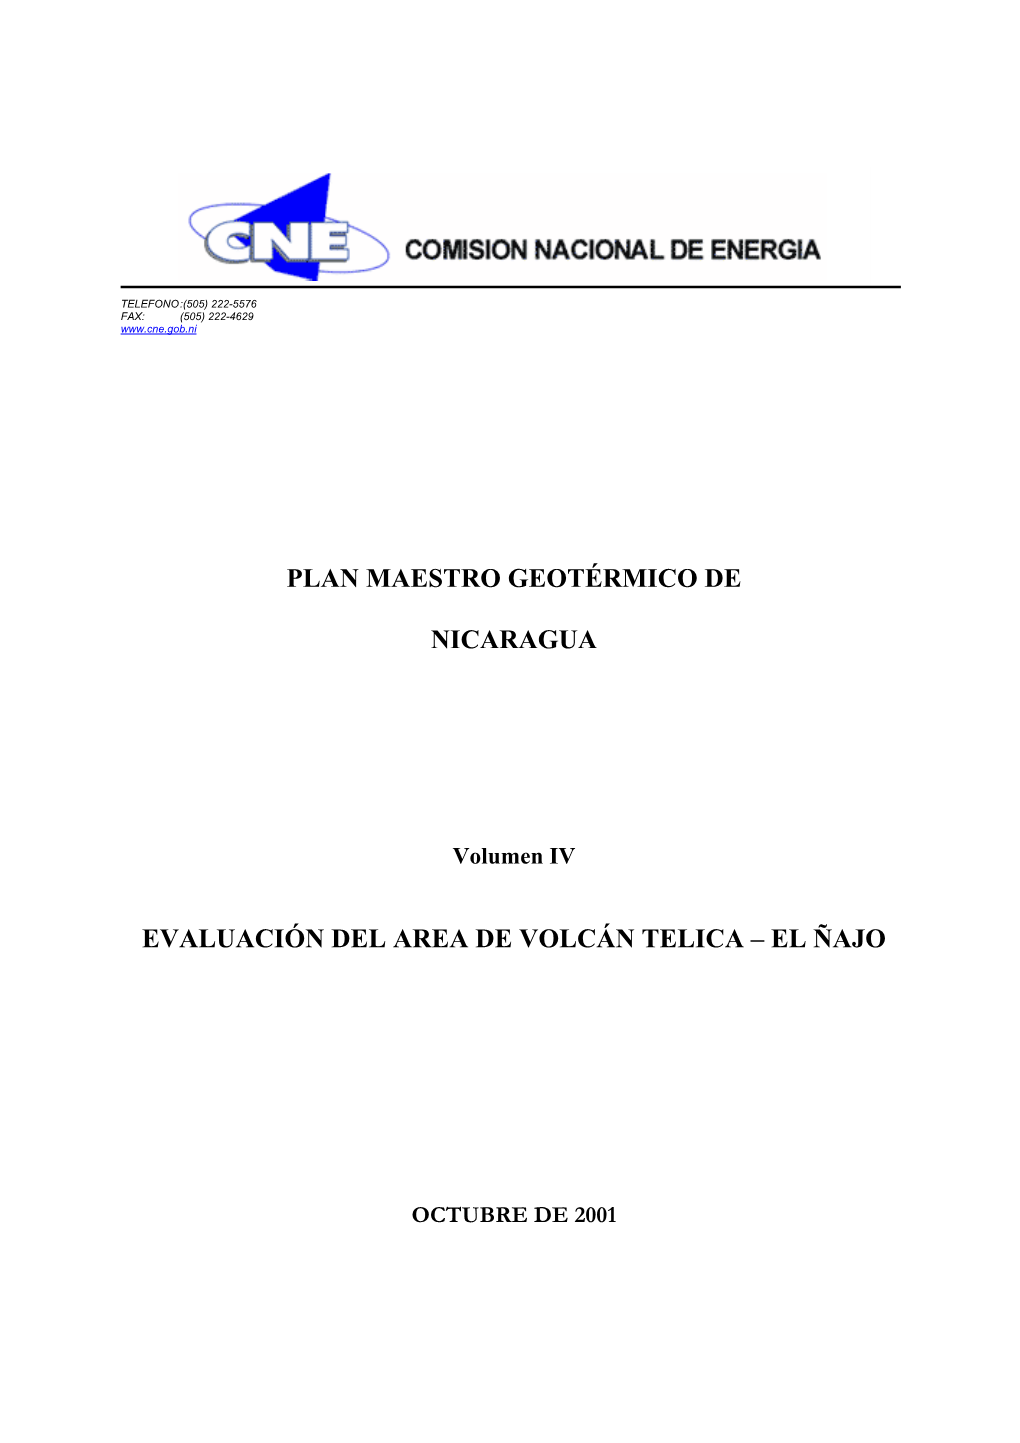 Volumen IV Volcán Telica – El Ñajo